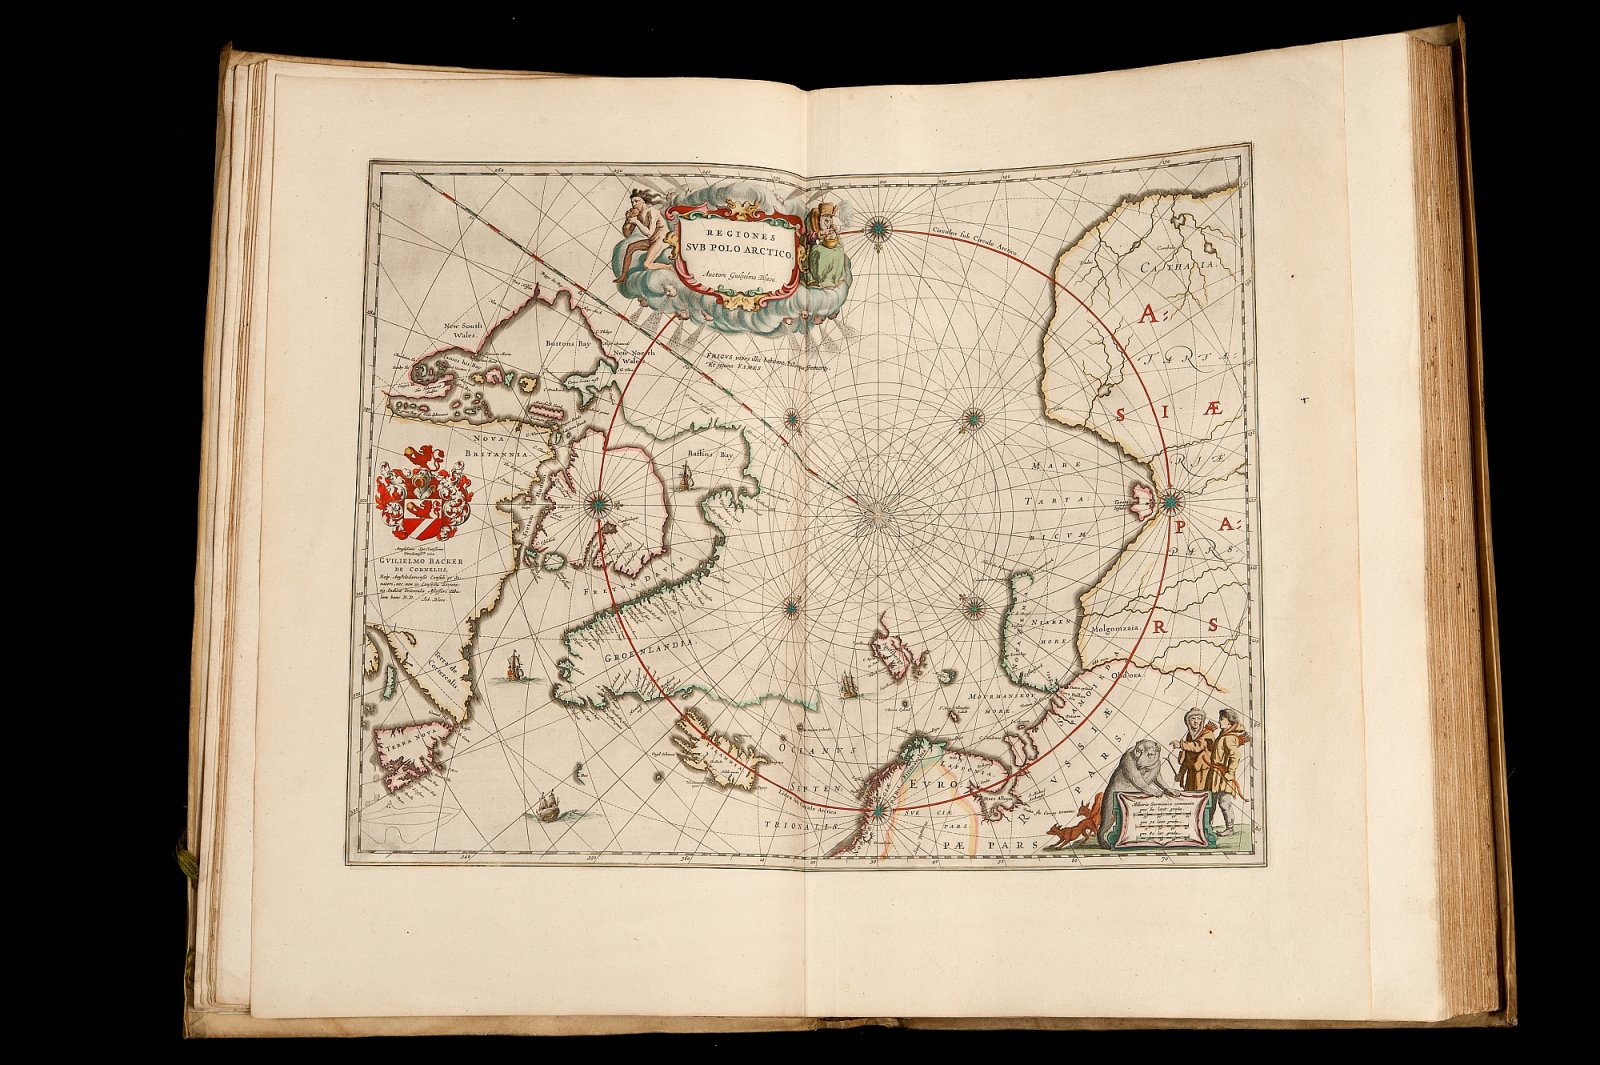 Poolkaart in Atlas Maior Blaeu, 1664, topstuk uit de Bijzondere Collecties van de Universiteitsbibliotheek Utrecht